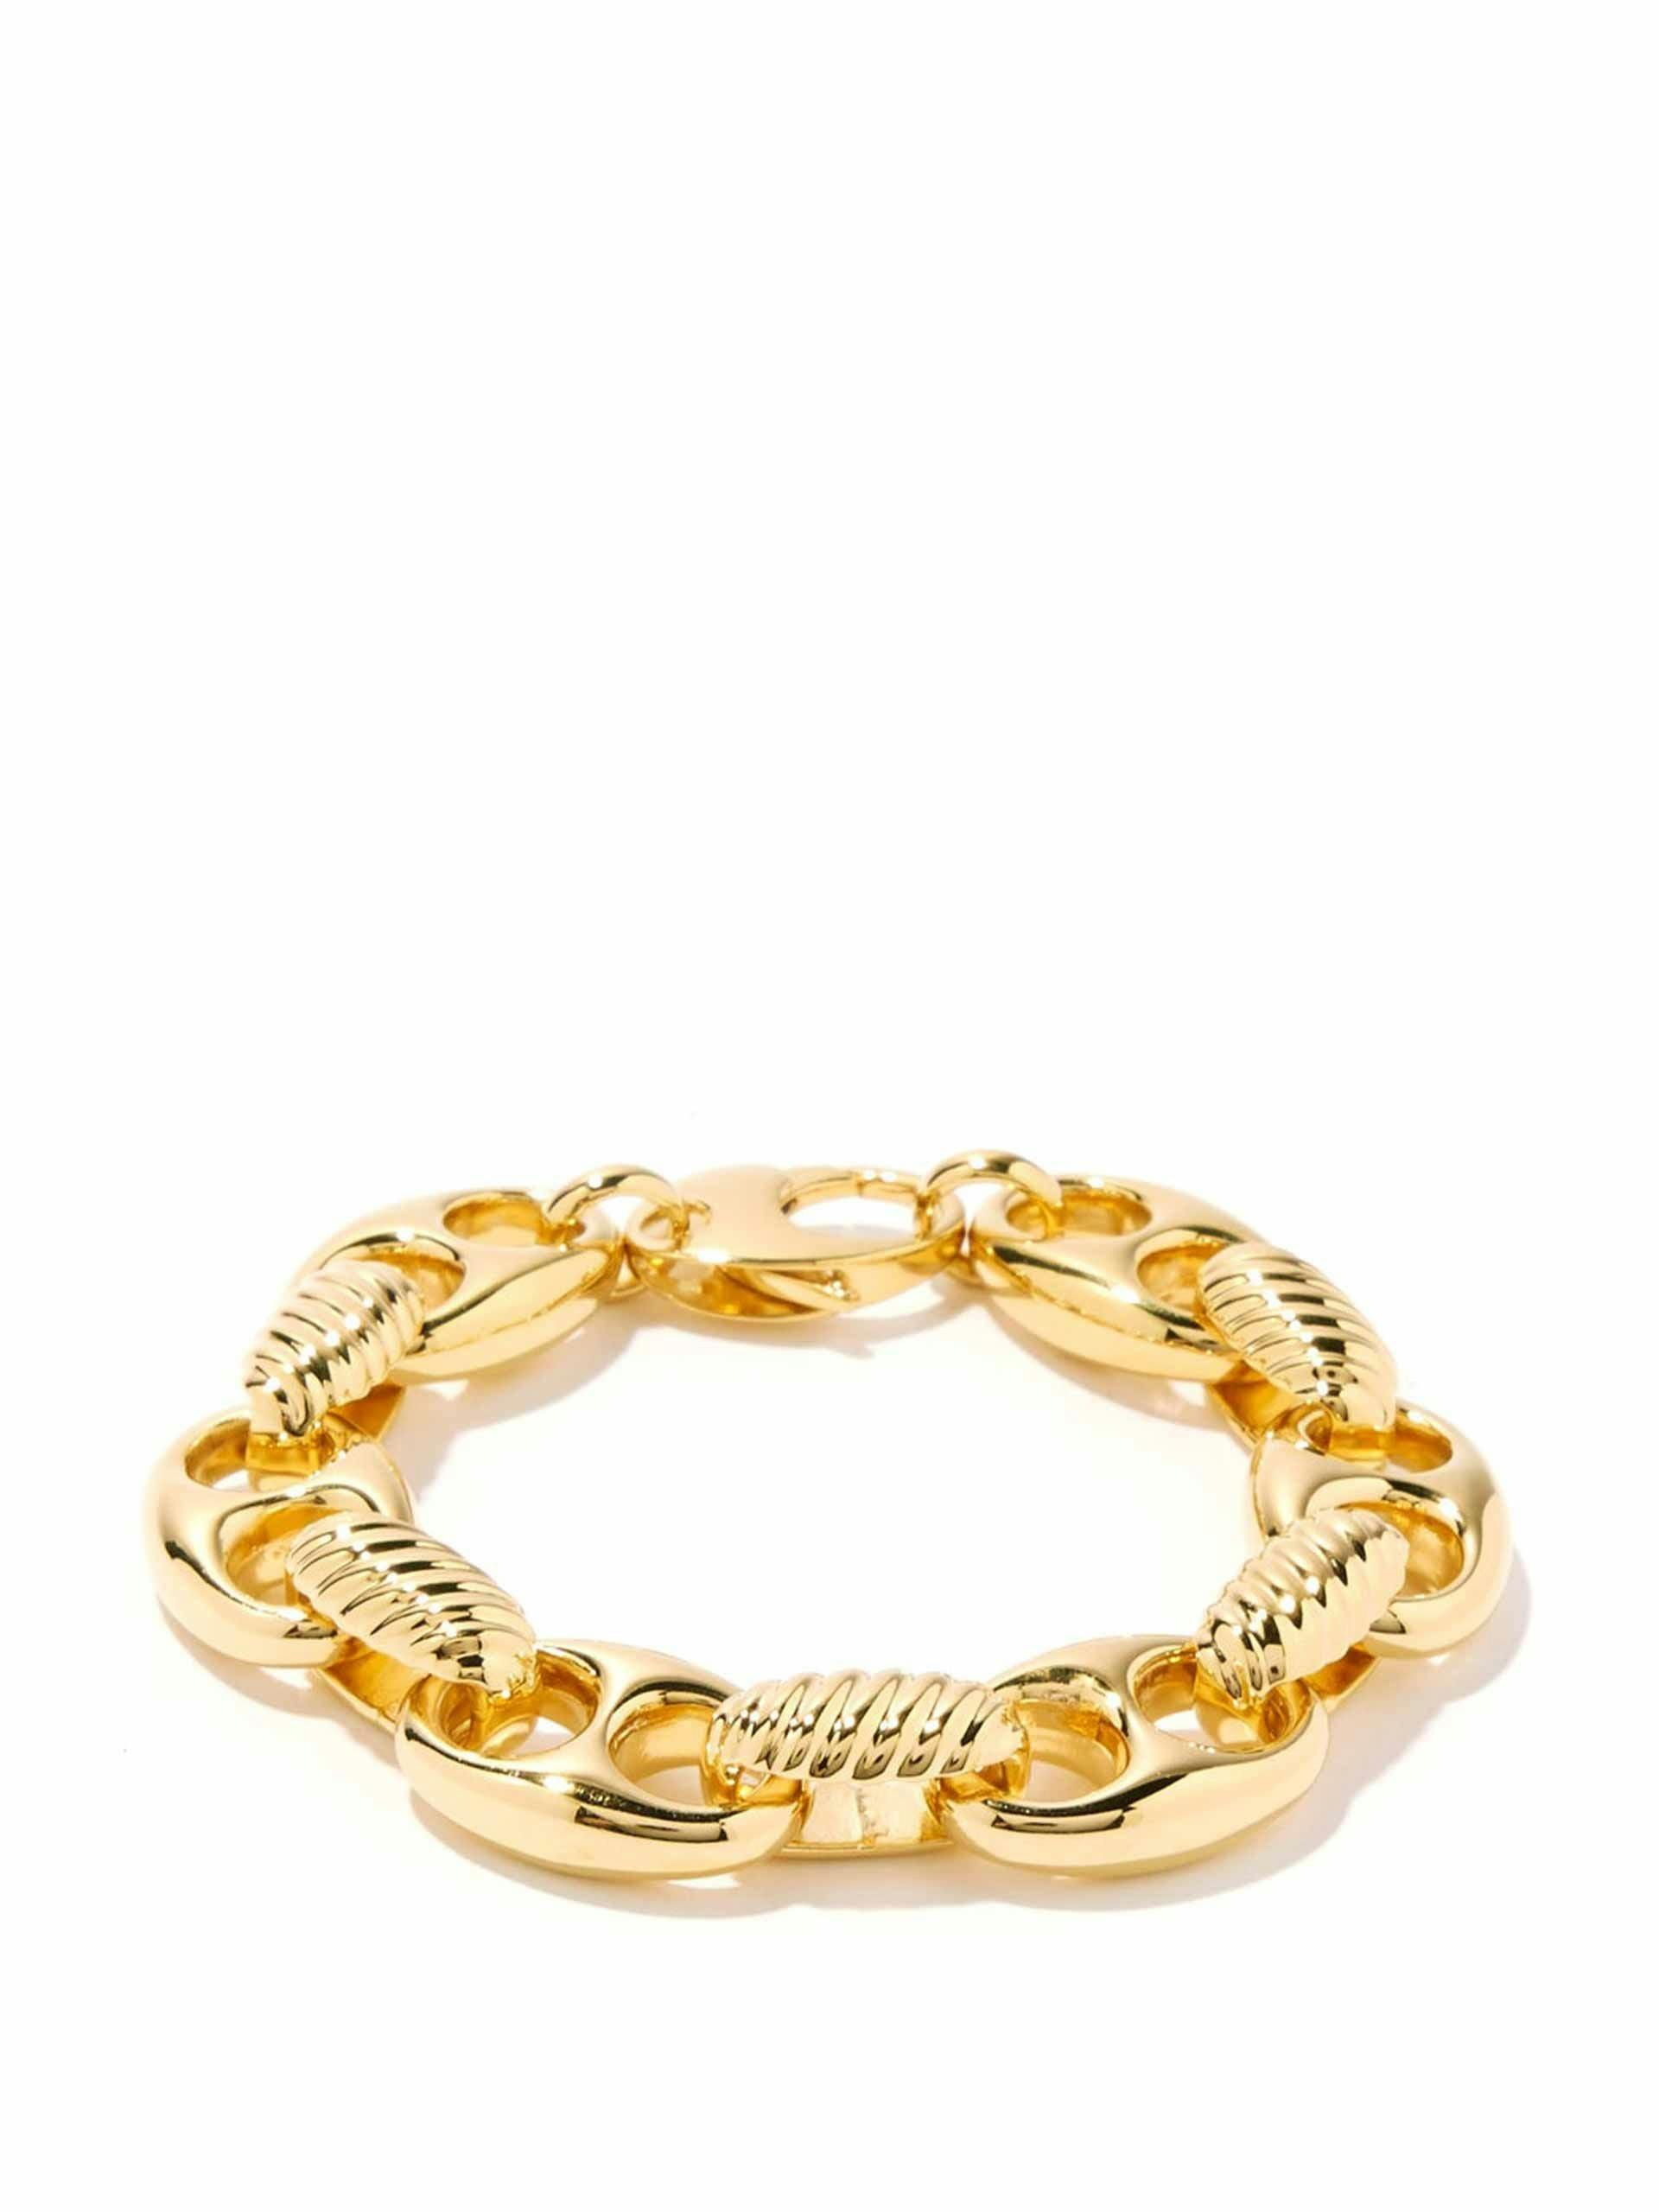 Gold chunky bracelet